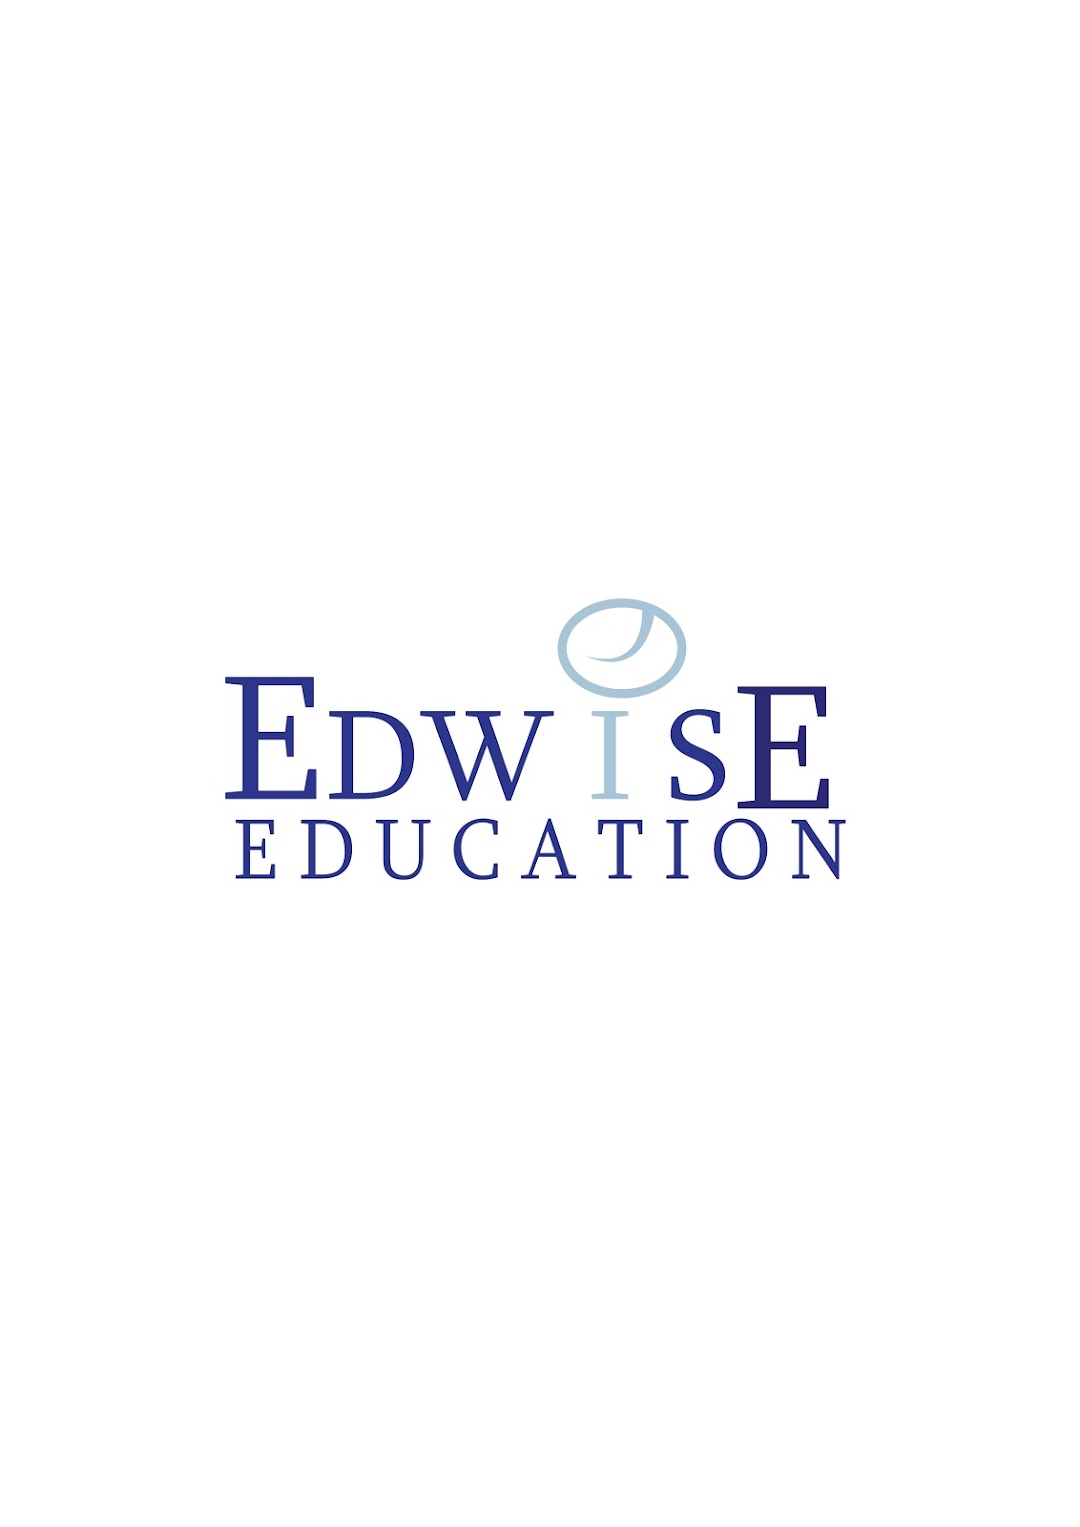 Edwise Education